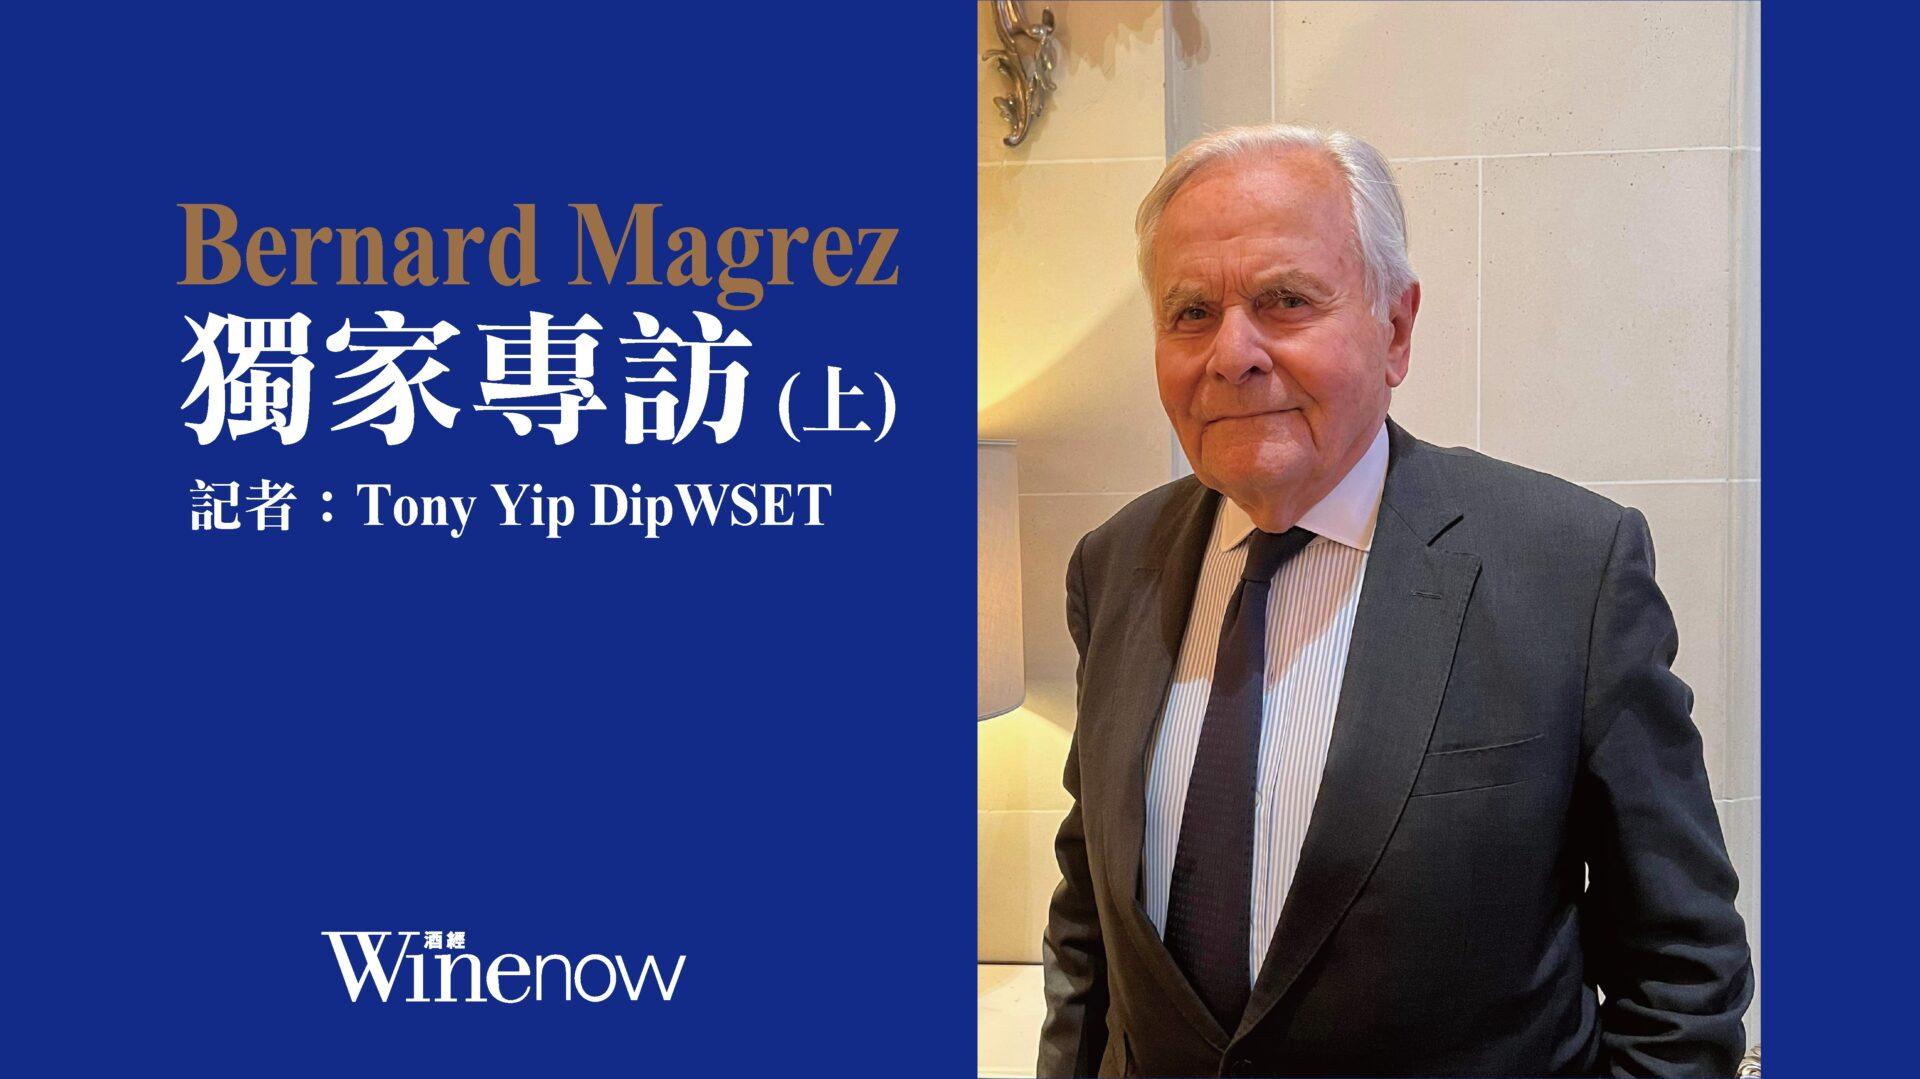 獨家專訪「雙金匙」酒業大亨 Bernard Magrez (上) - WineNow HK 專欄文章